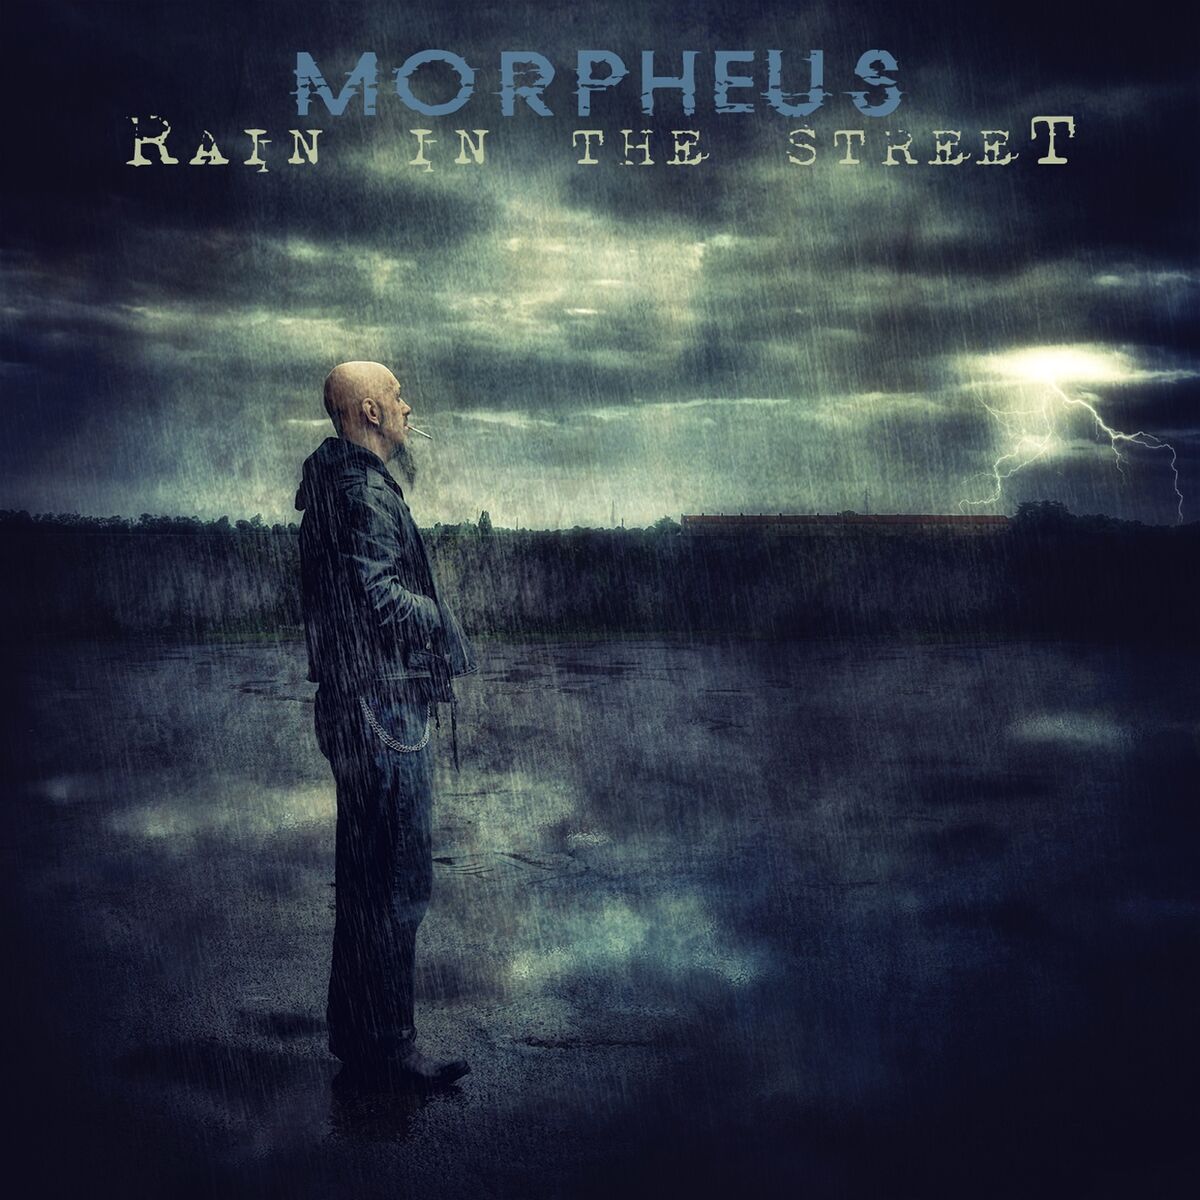 Morpheus: albums